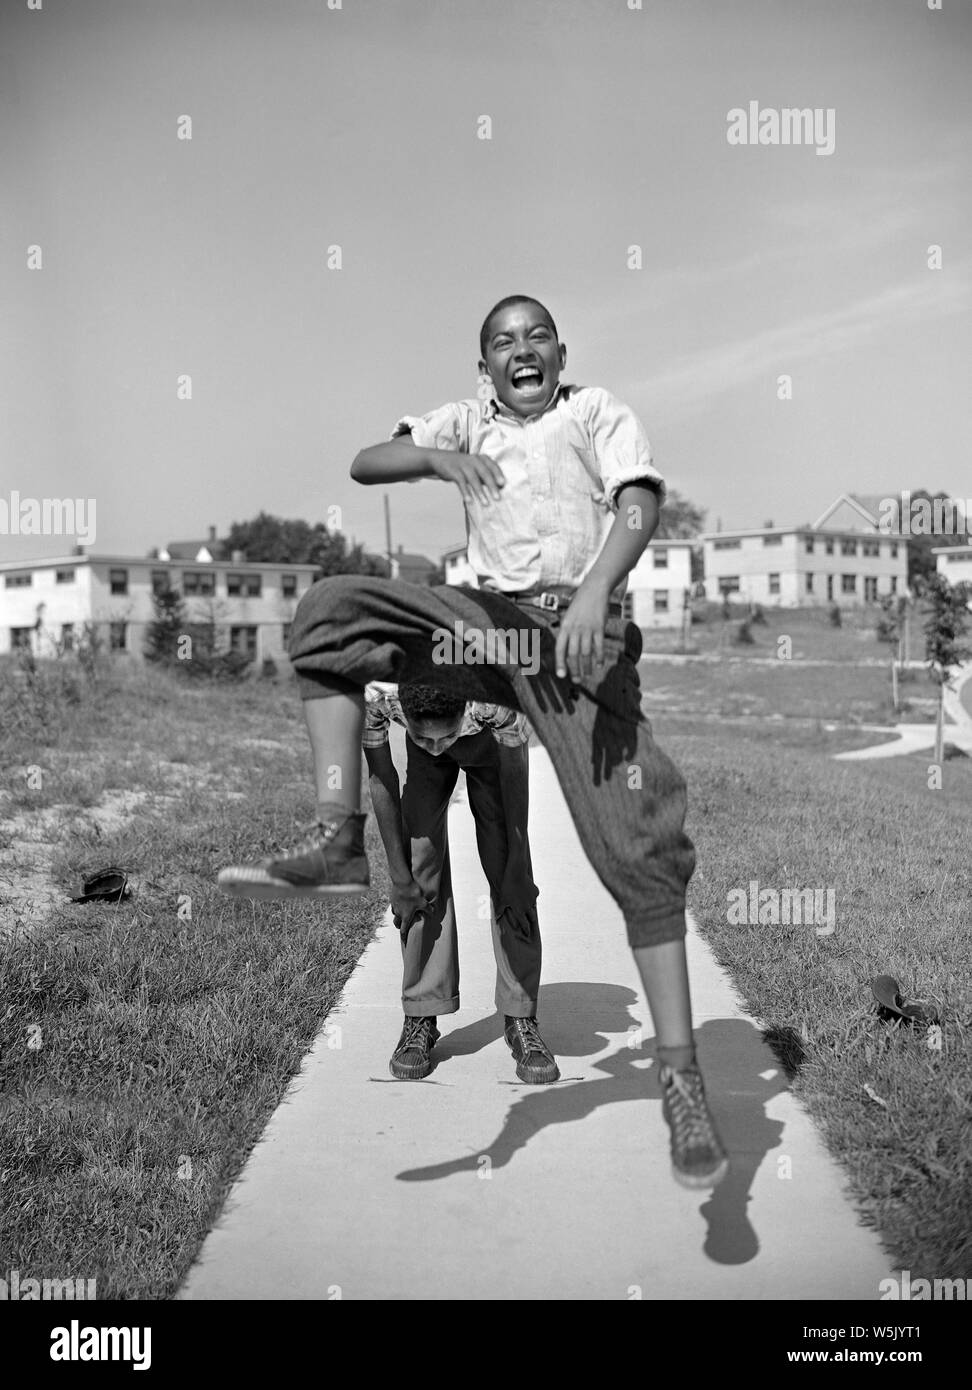 Deux garçons jouant Leapfrog, Frederick Douglass, projet immobilier Quartier Anacostia, Washington DC, USA, photo de Gordon Parks, Juillet 1942 Banque D'Images